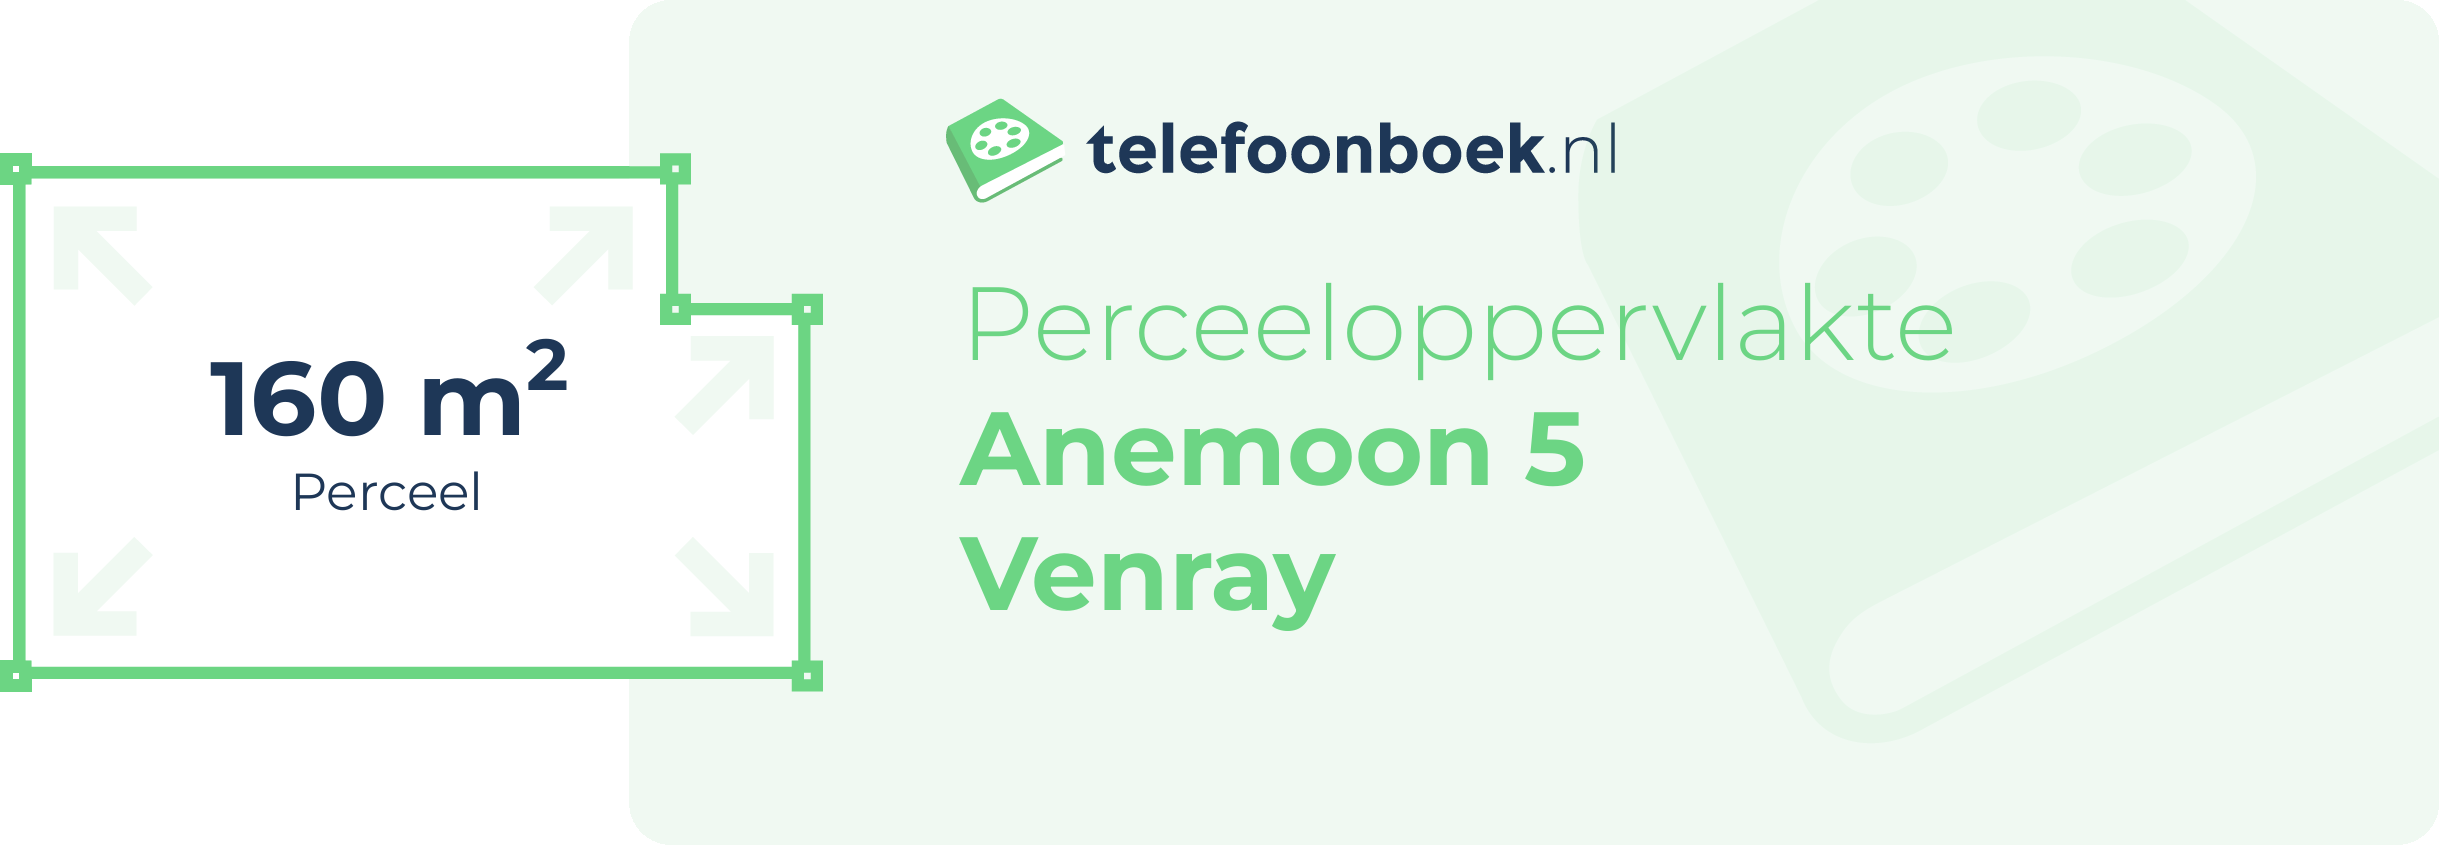 Perceeloppervlakte Anemoon 5 Venray